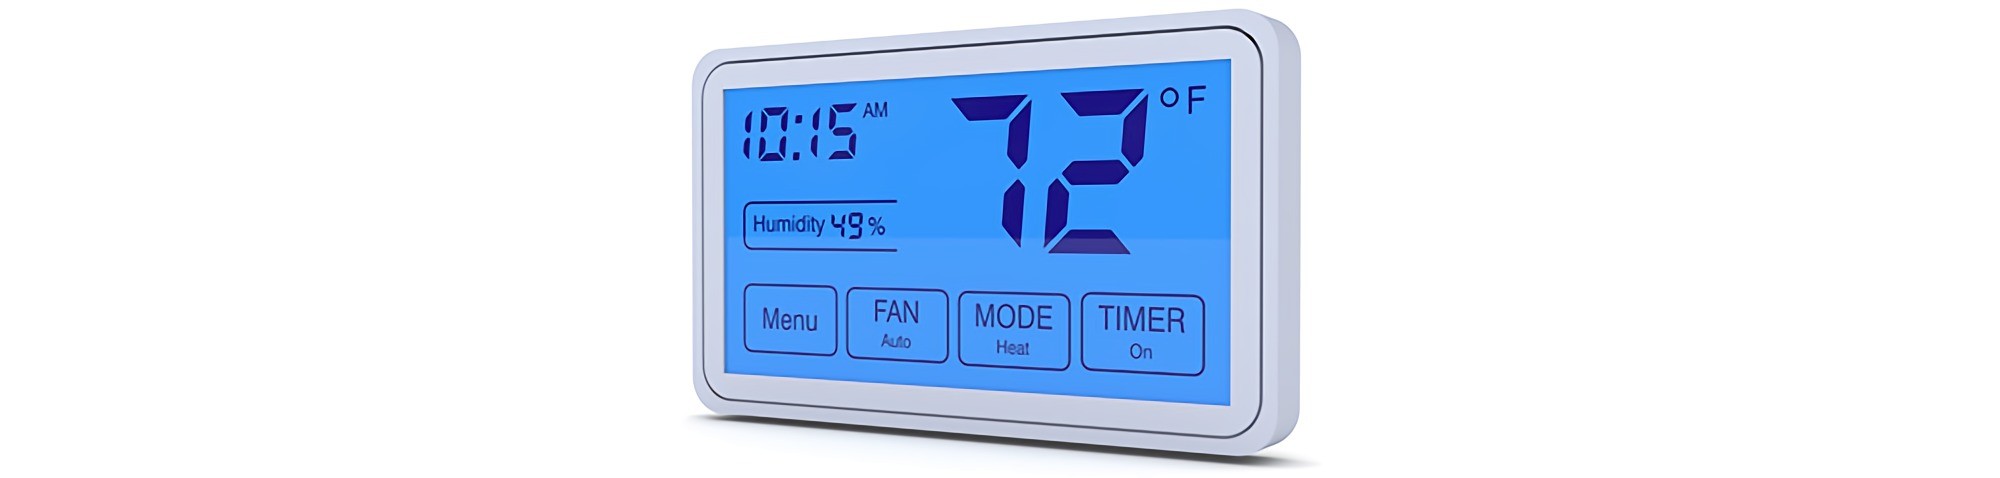 smart thermostat HVAC system